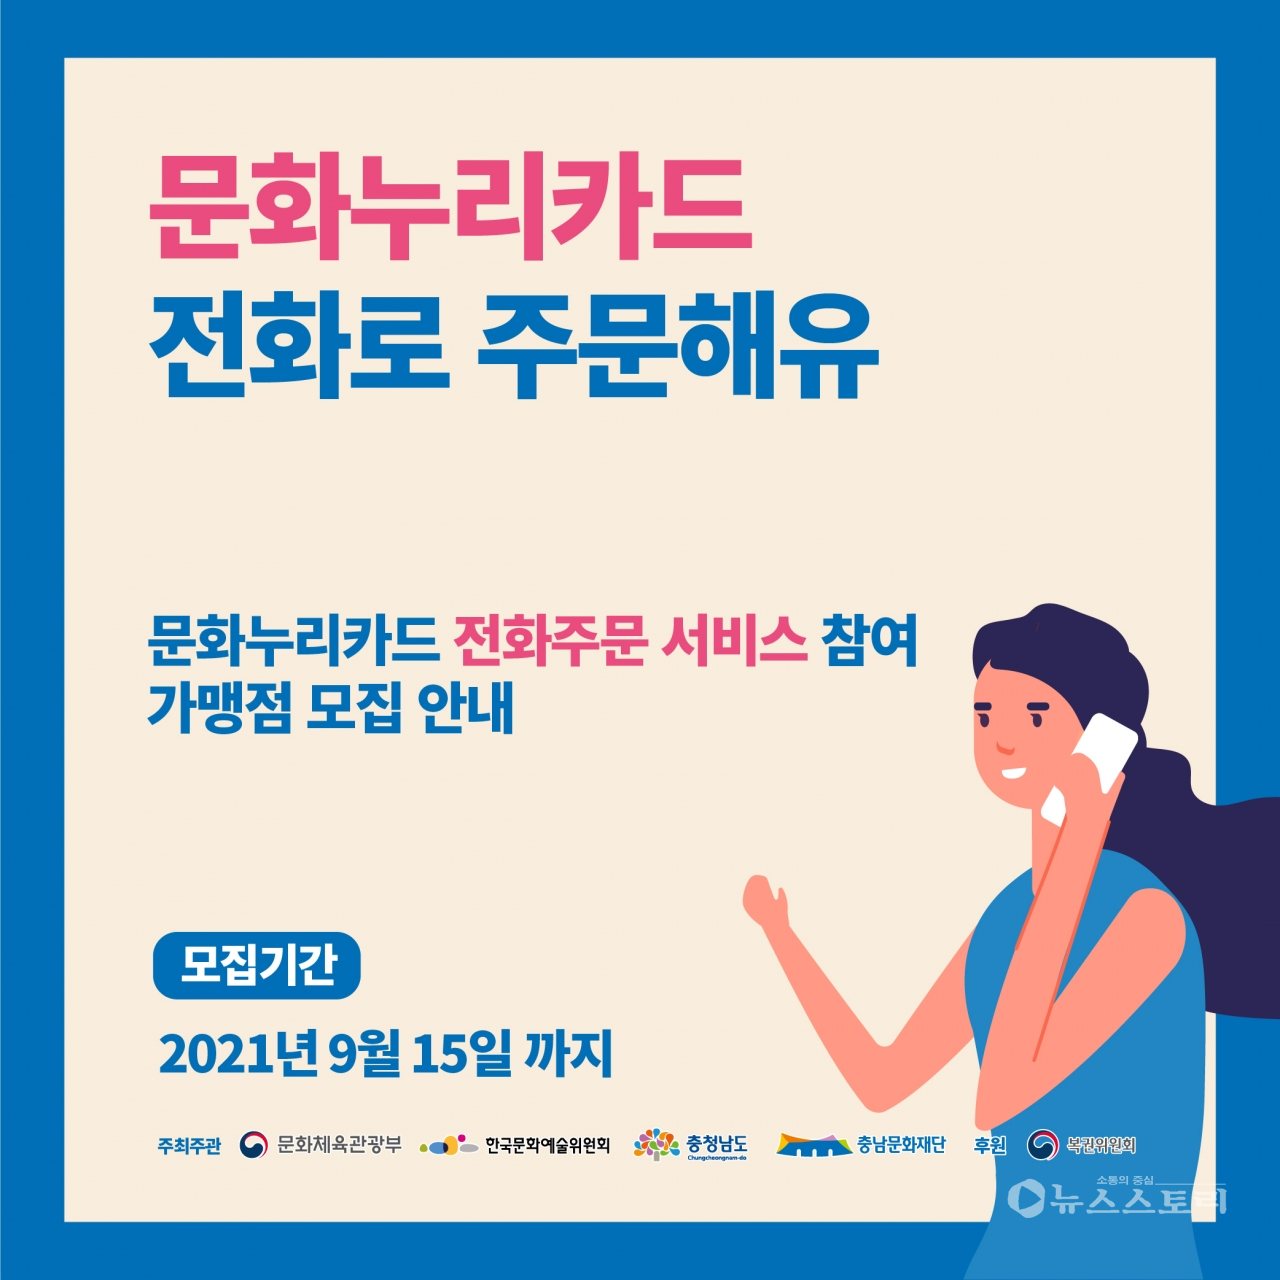 '문화누리카드 전화로 주문해유~' 가맹점 모집 카드뉴스. ⓒ충남문화재단